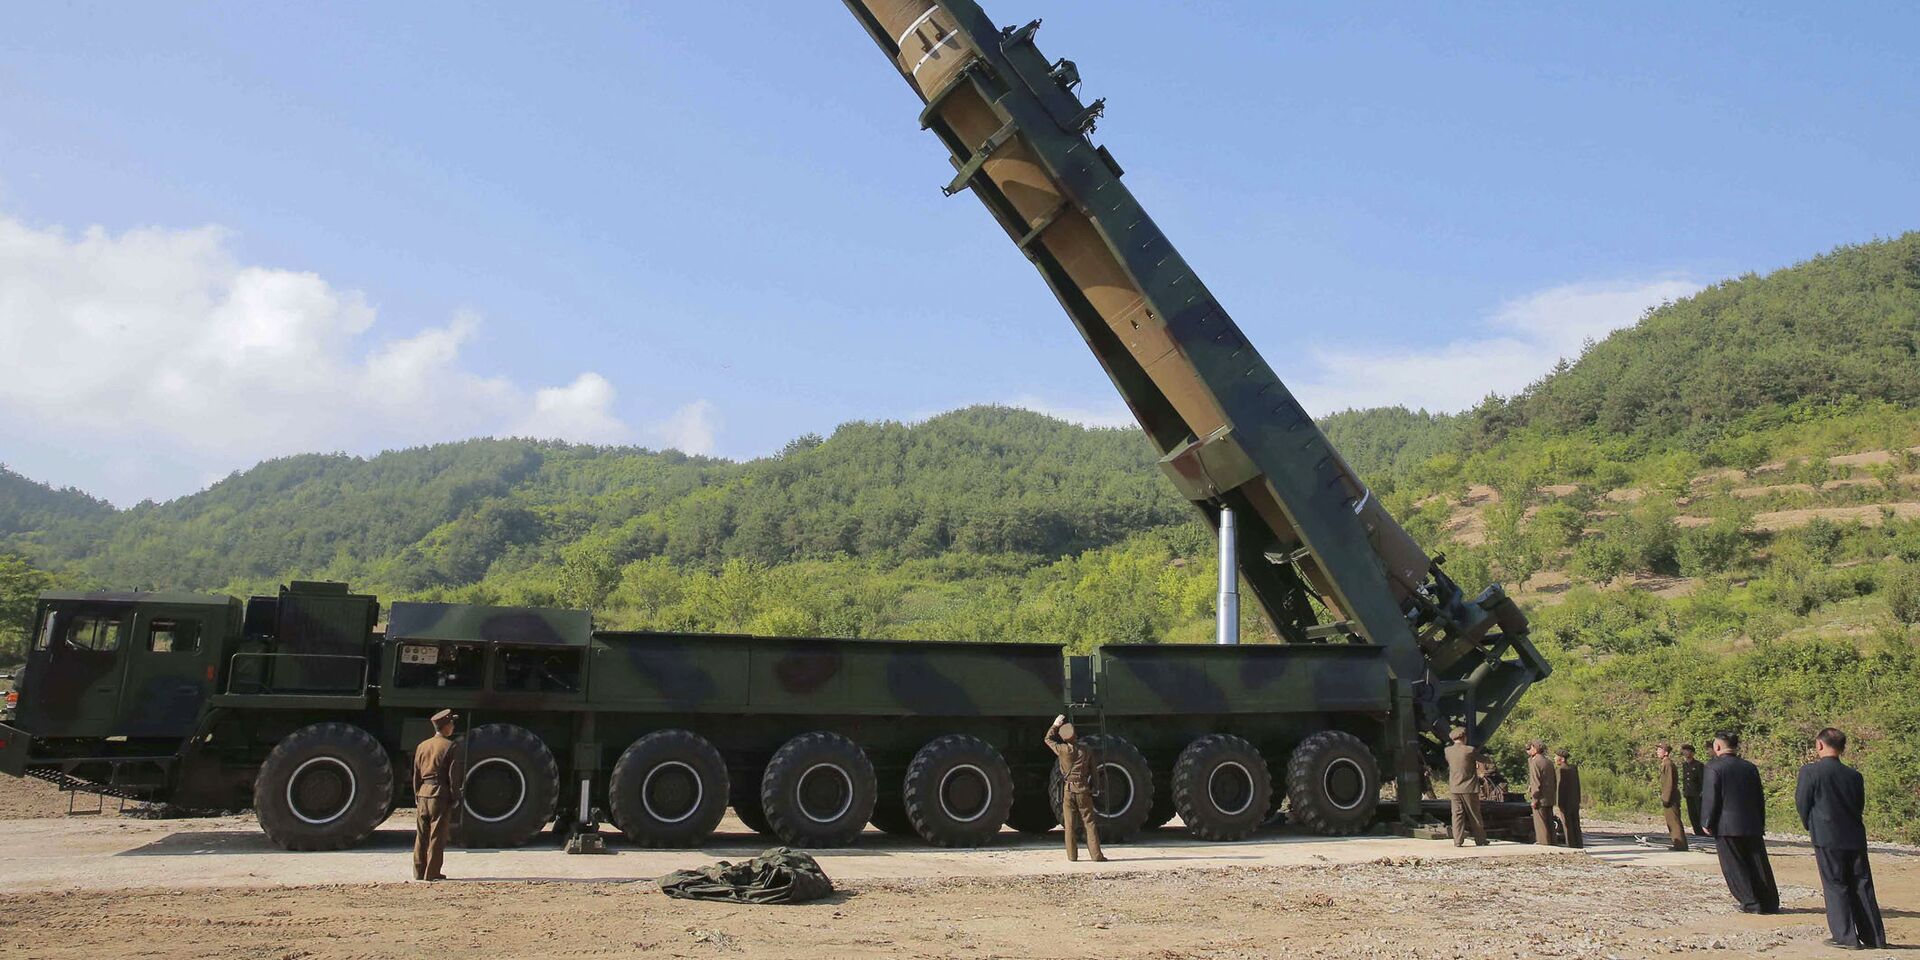 Лидер КНДР Ким Чен Ын осматривает ракету Хвасон-14 перед испытаниями. 4 июля 2017 - ИноСМИ, 1920, 07.04.2023